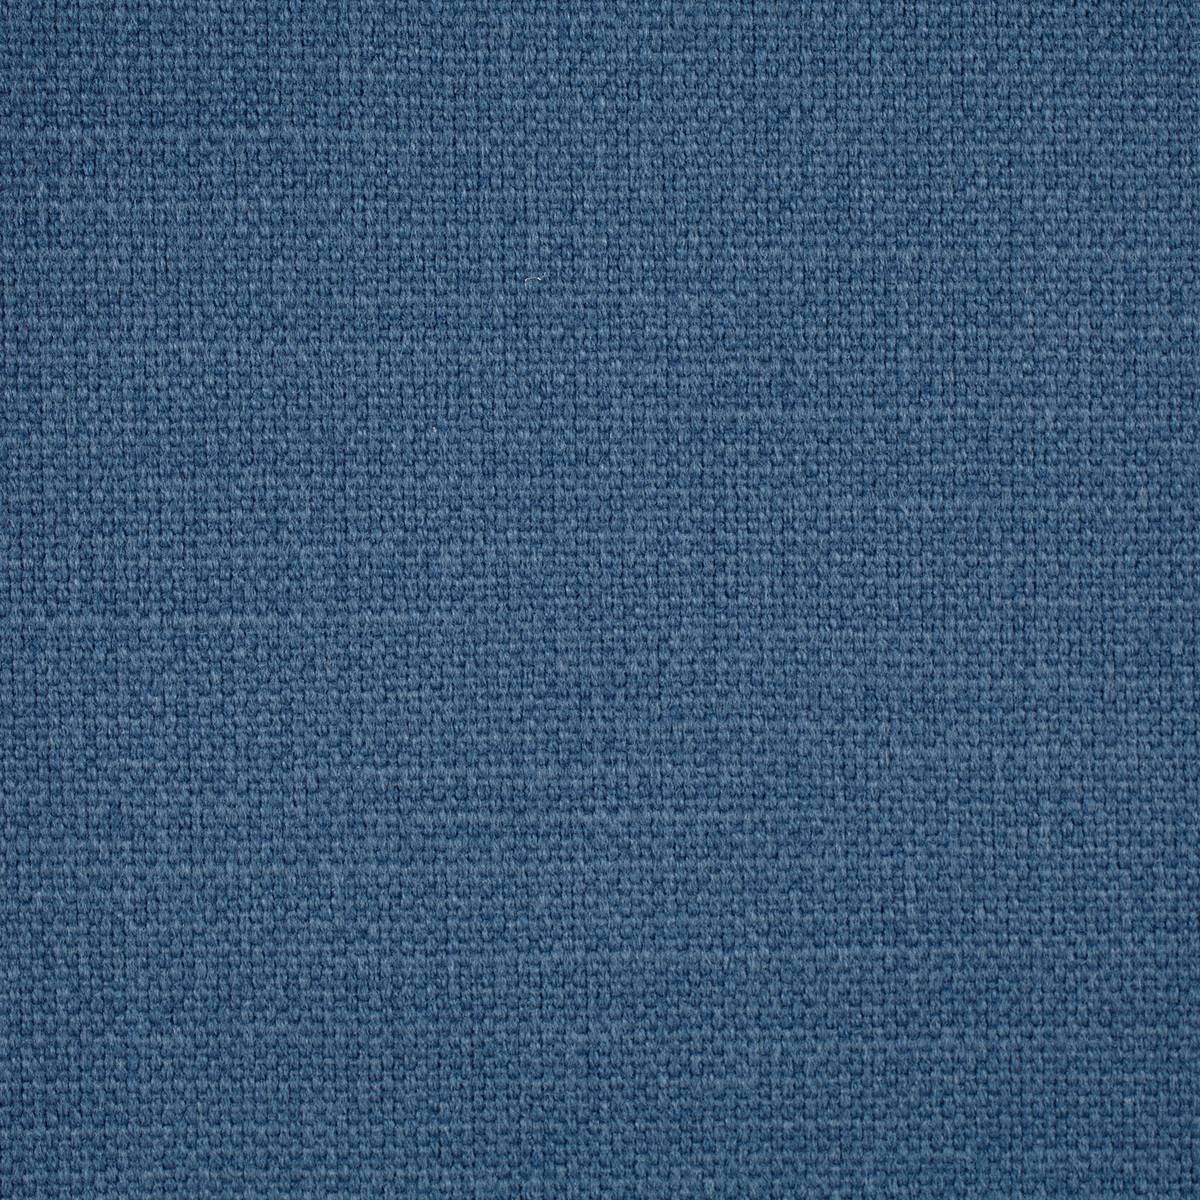 Arley Denim Fabric by Sanderson